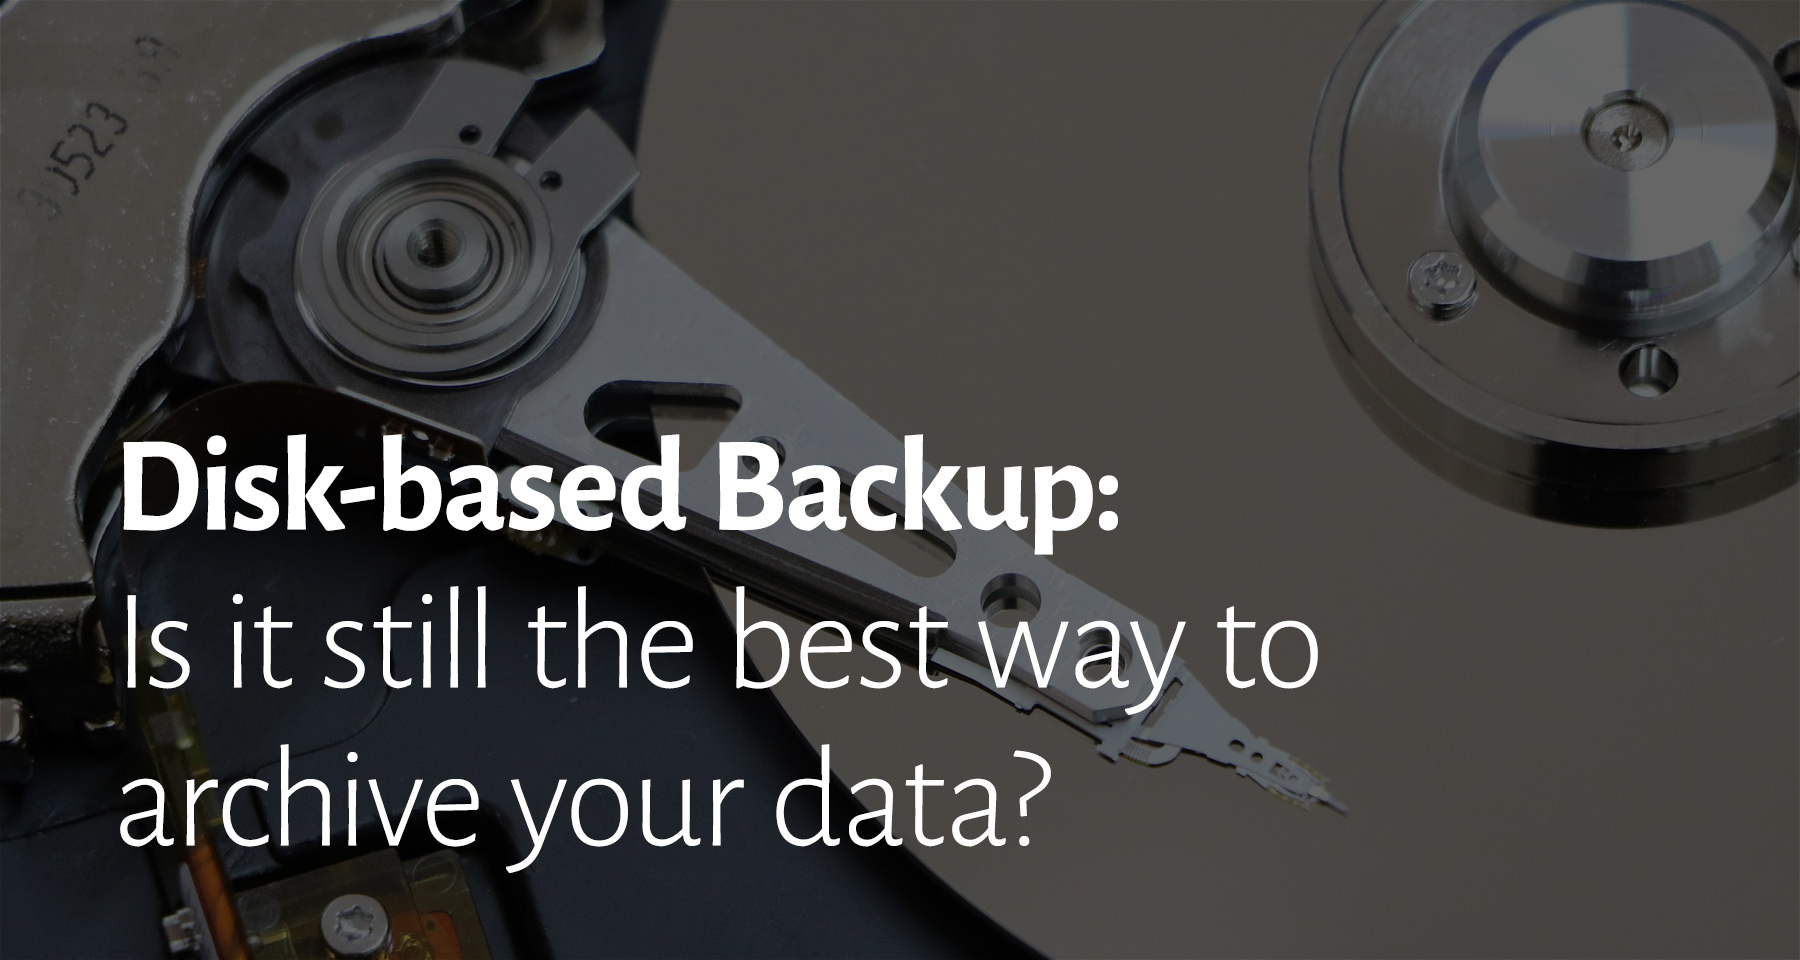 Disk-based backup